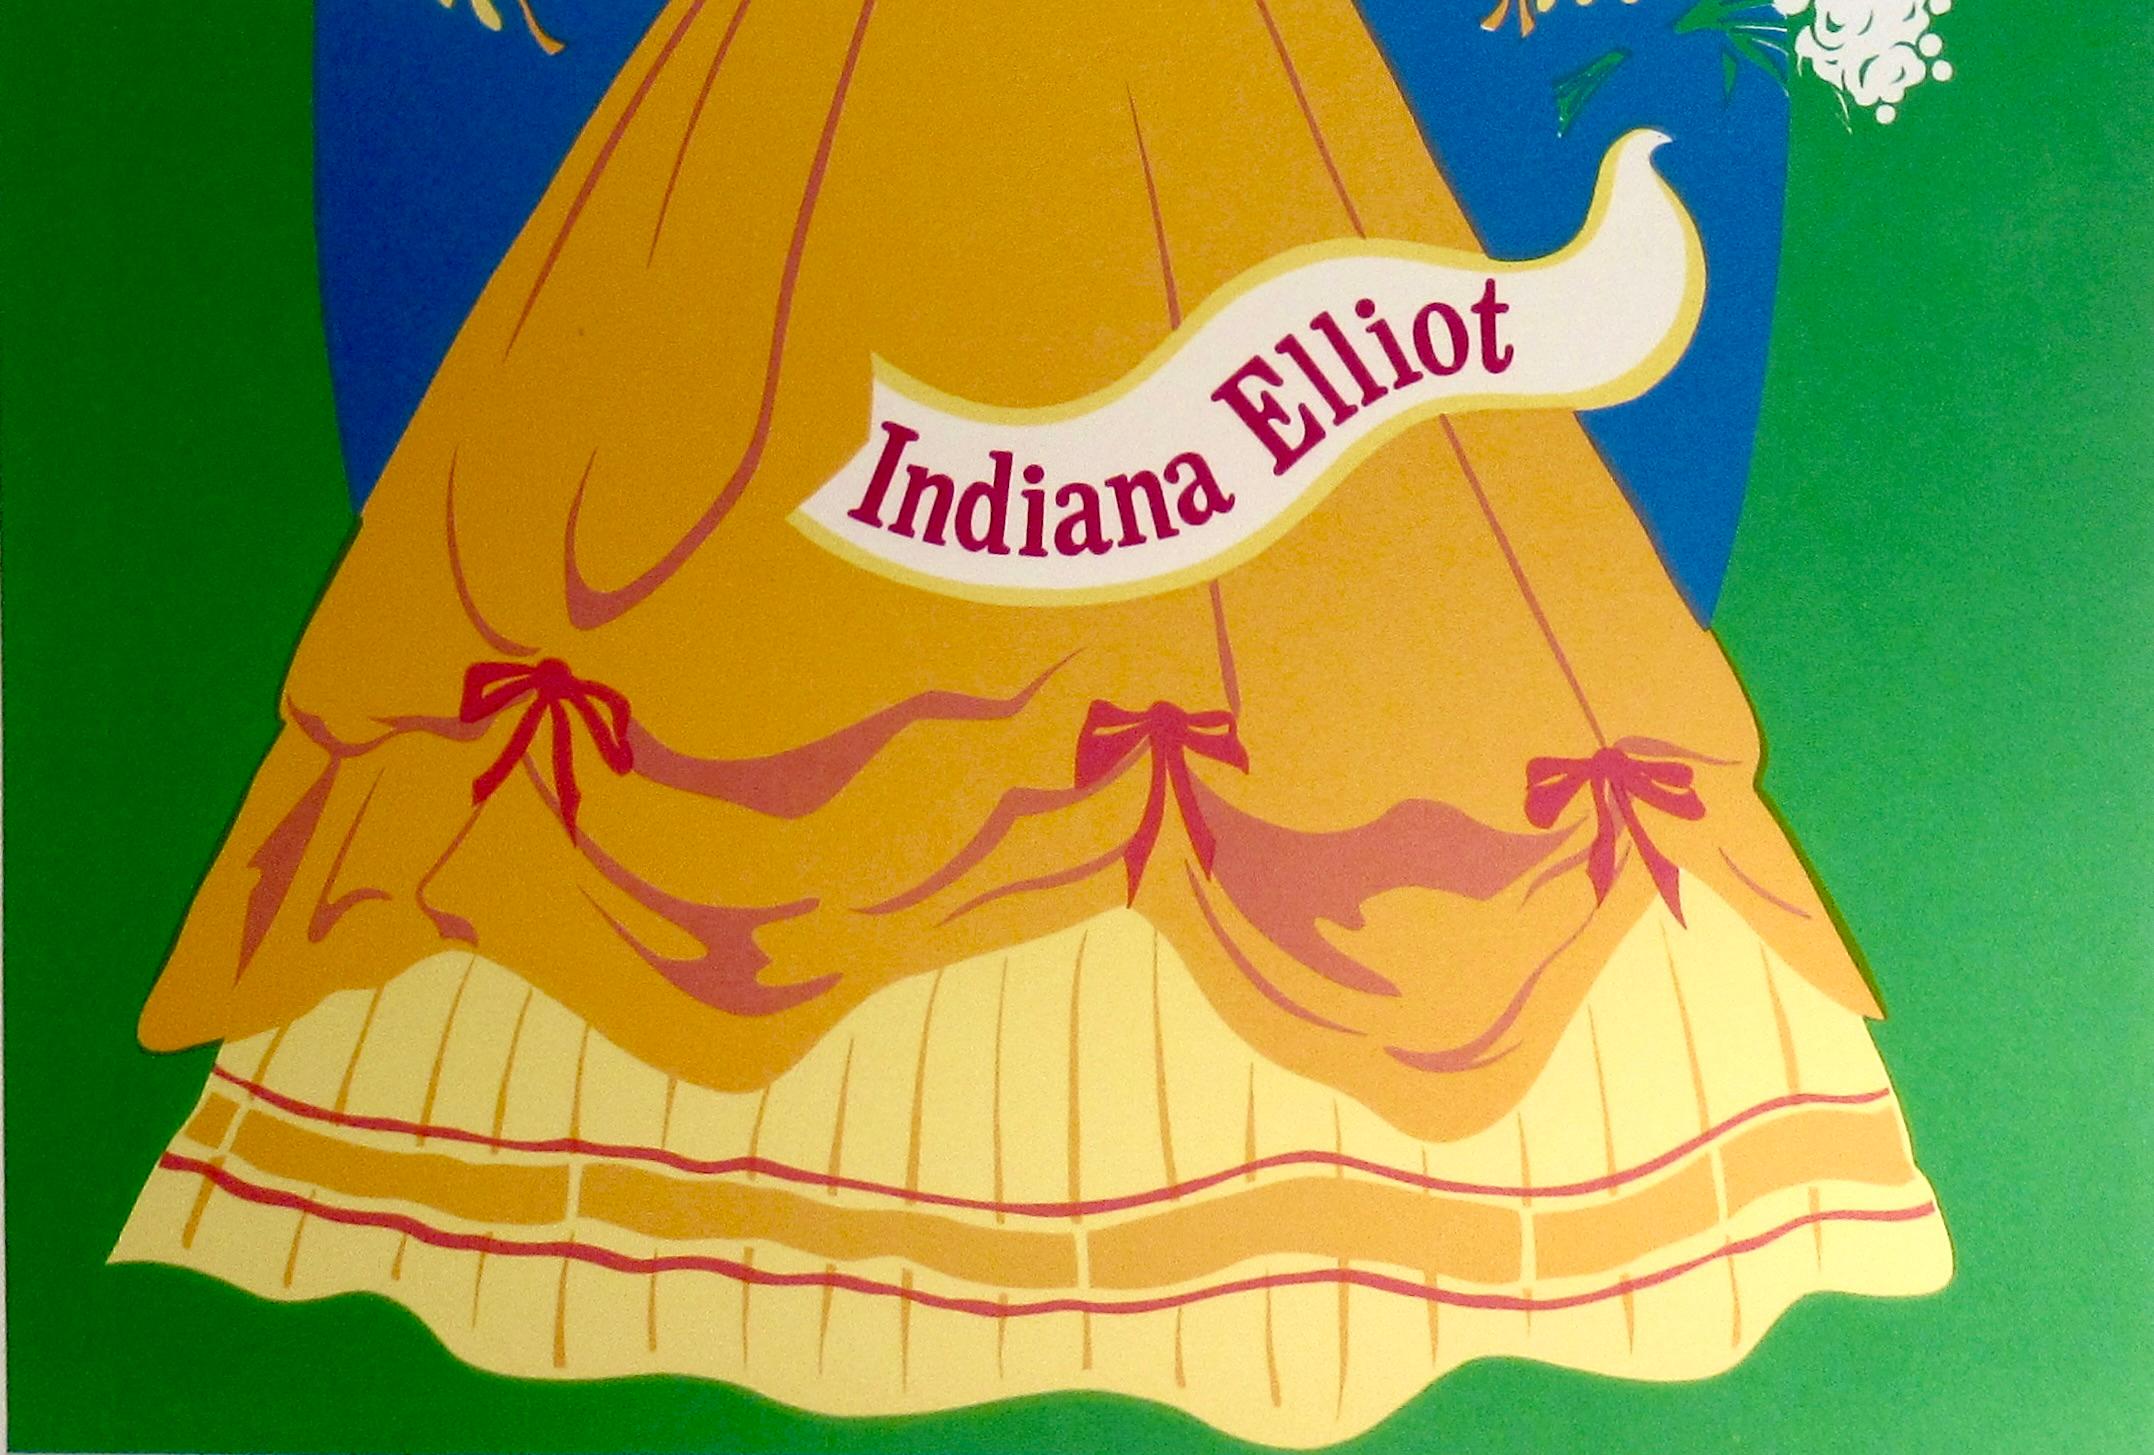 Indiana Elliot (Pop-Art), Print, von Robert Indiana